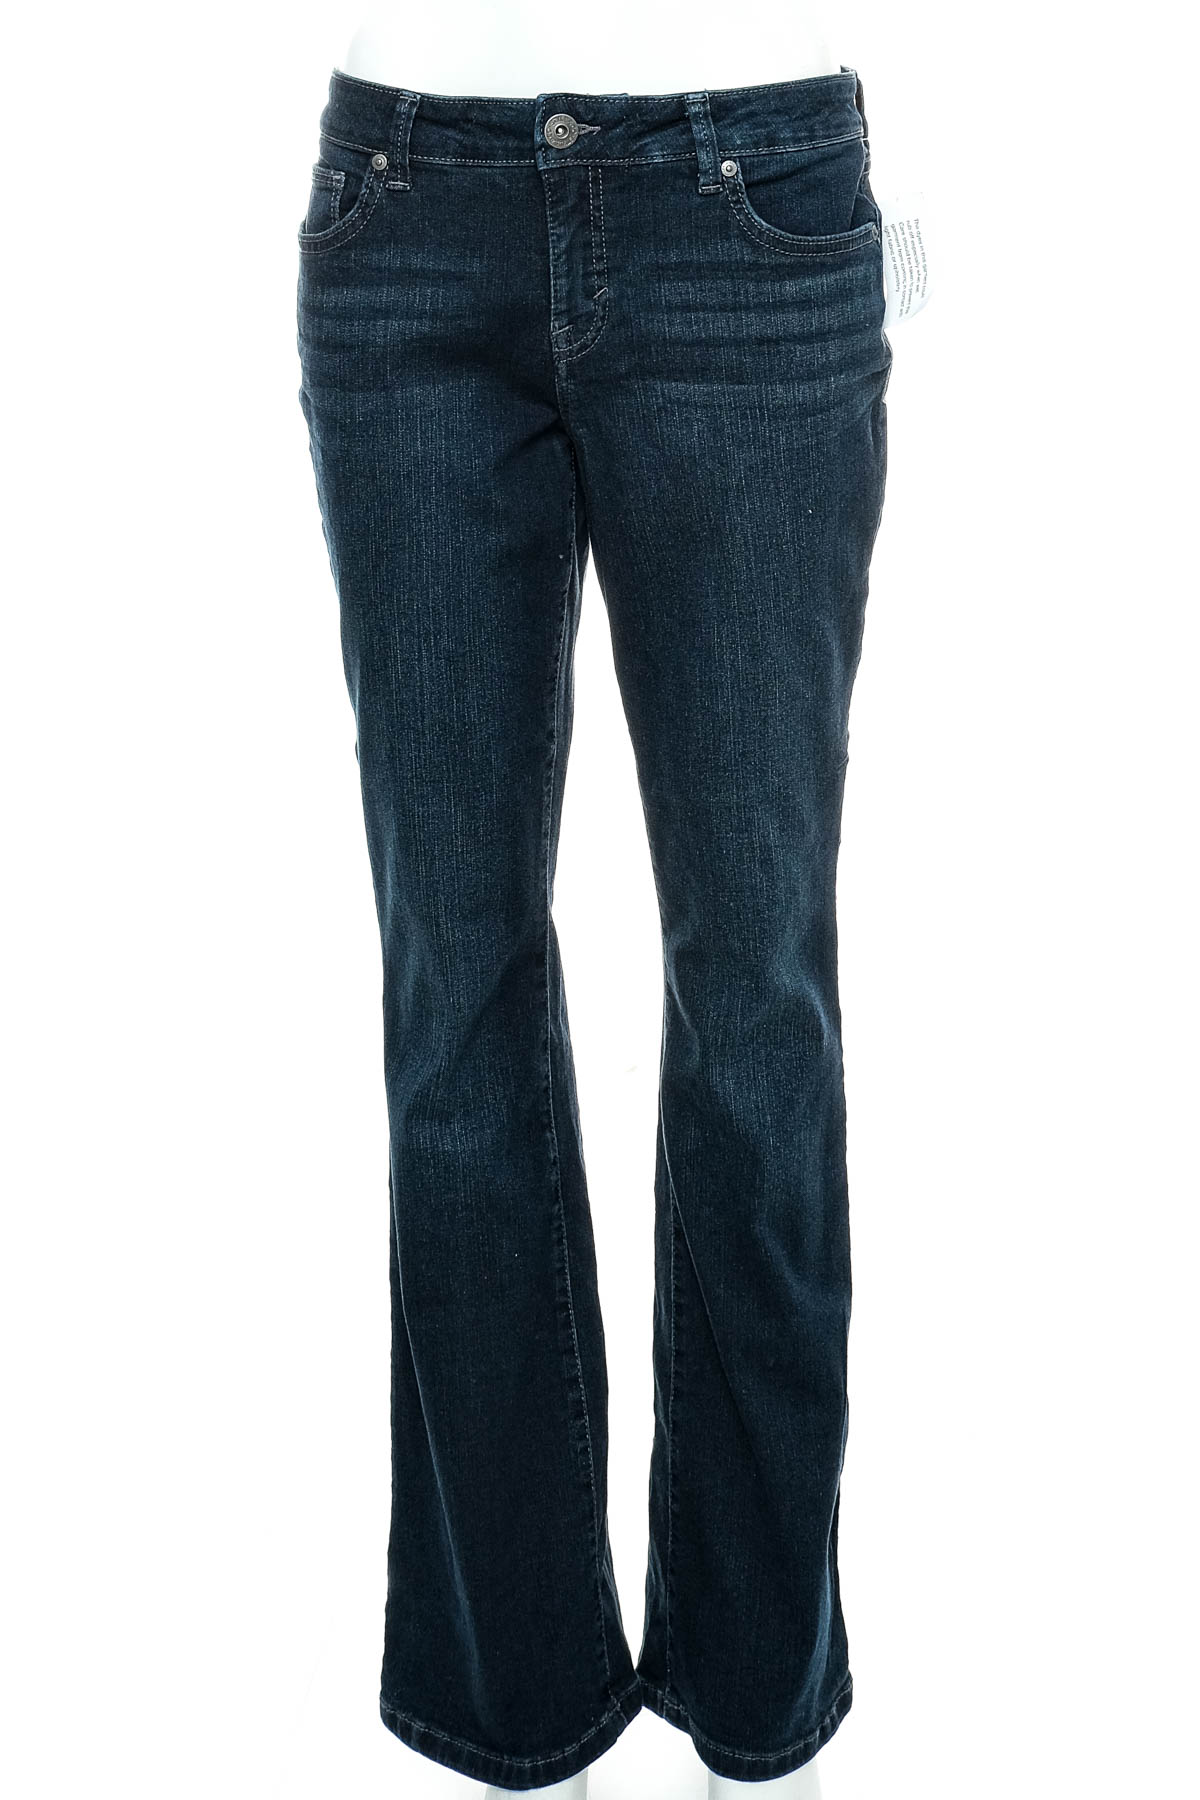 Women's jeans - Style & Co - 0